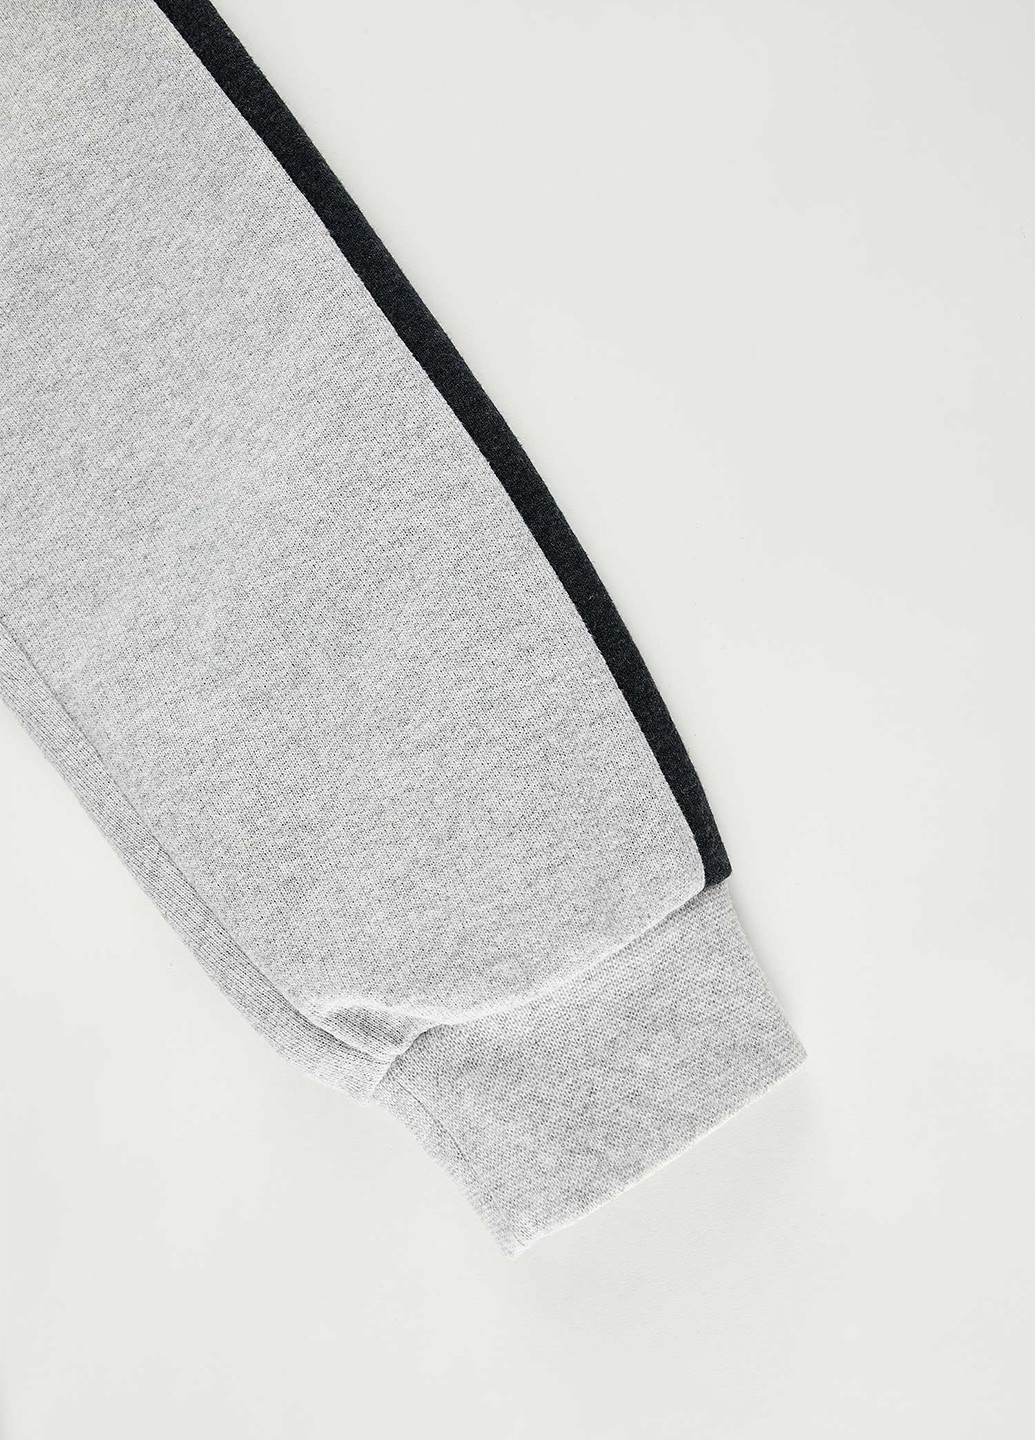 Костюм(худи, брюки) DeFacto брючный светло-серый спортивный полиэстер, футер